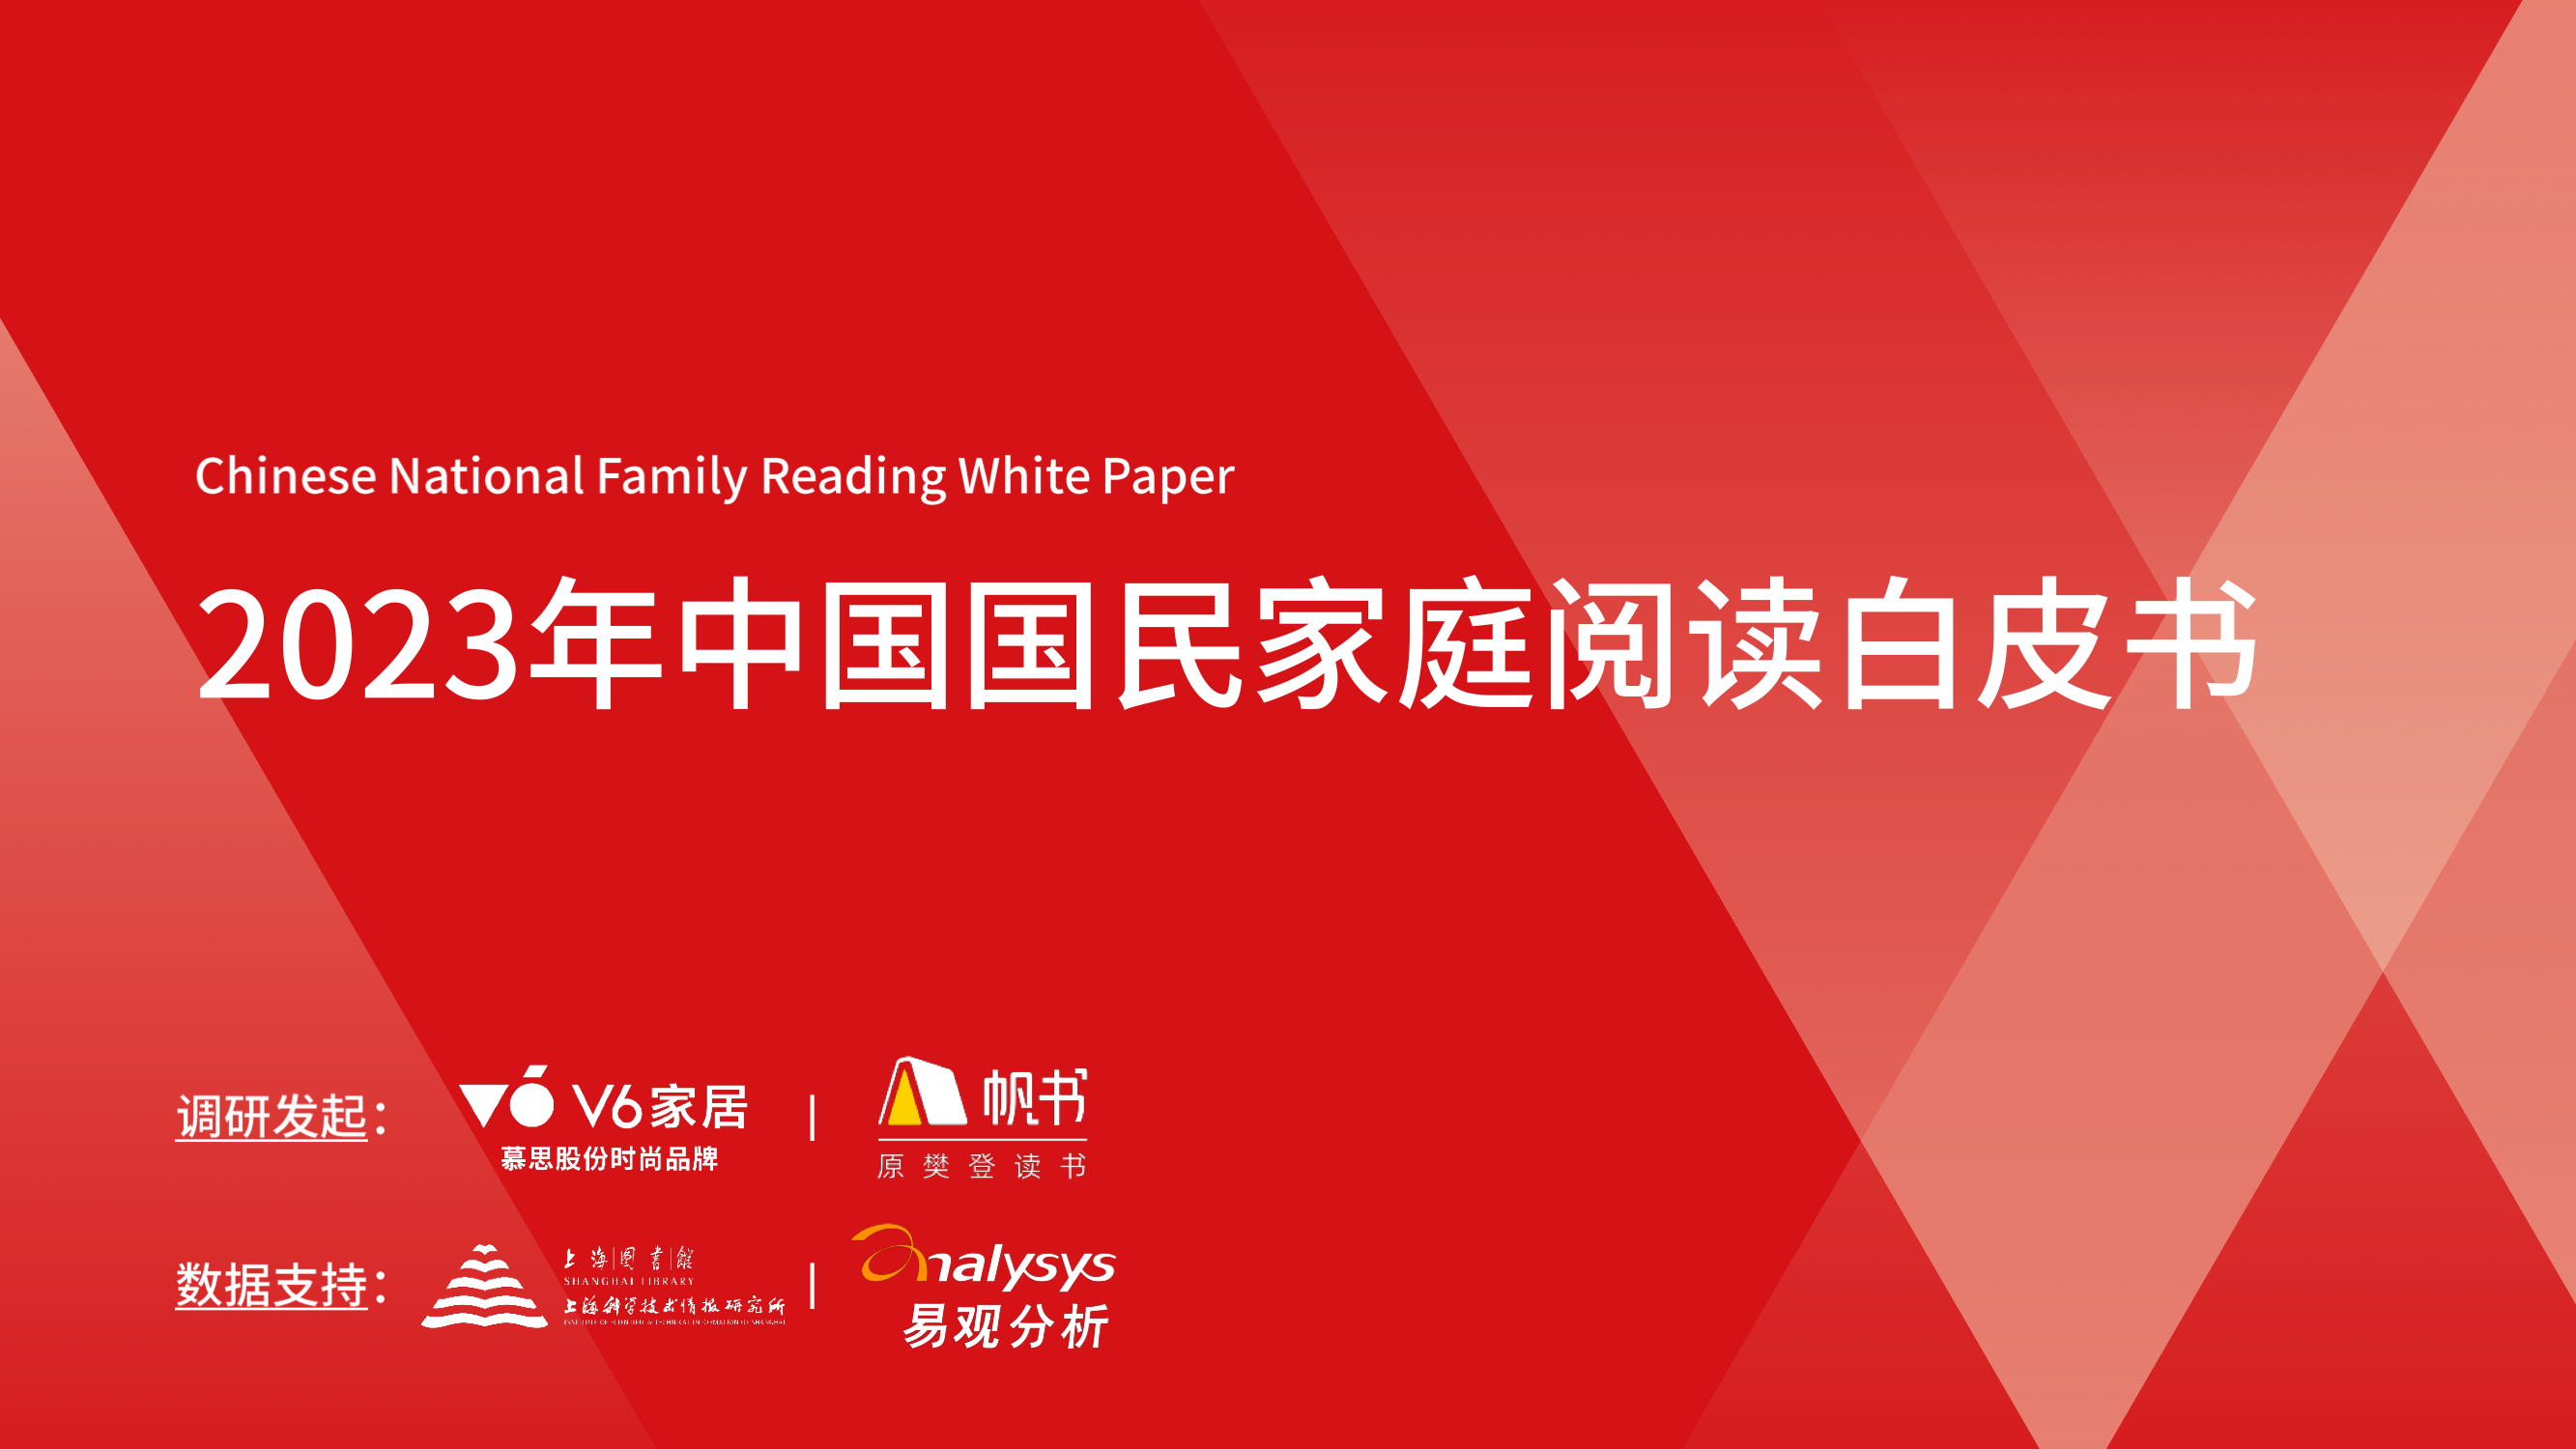 2023年中国国民家庭阅读白皮书